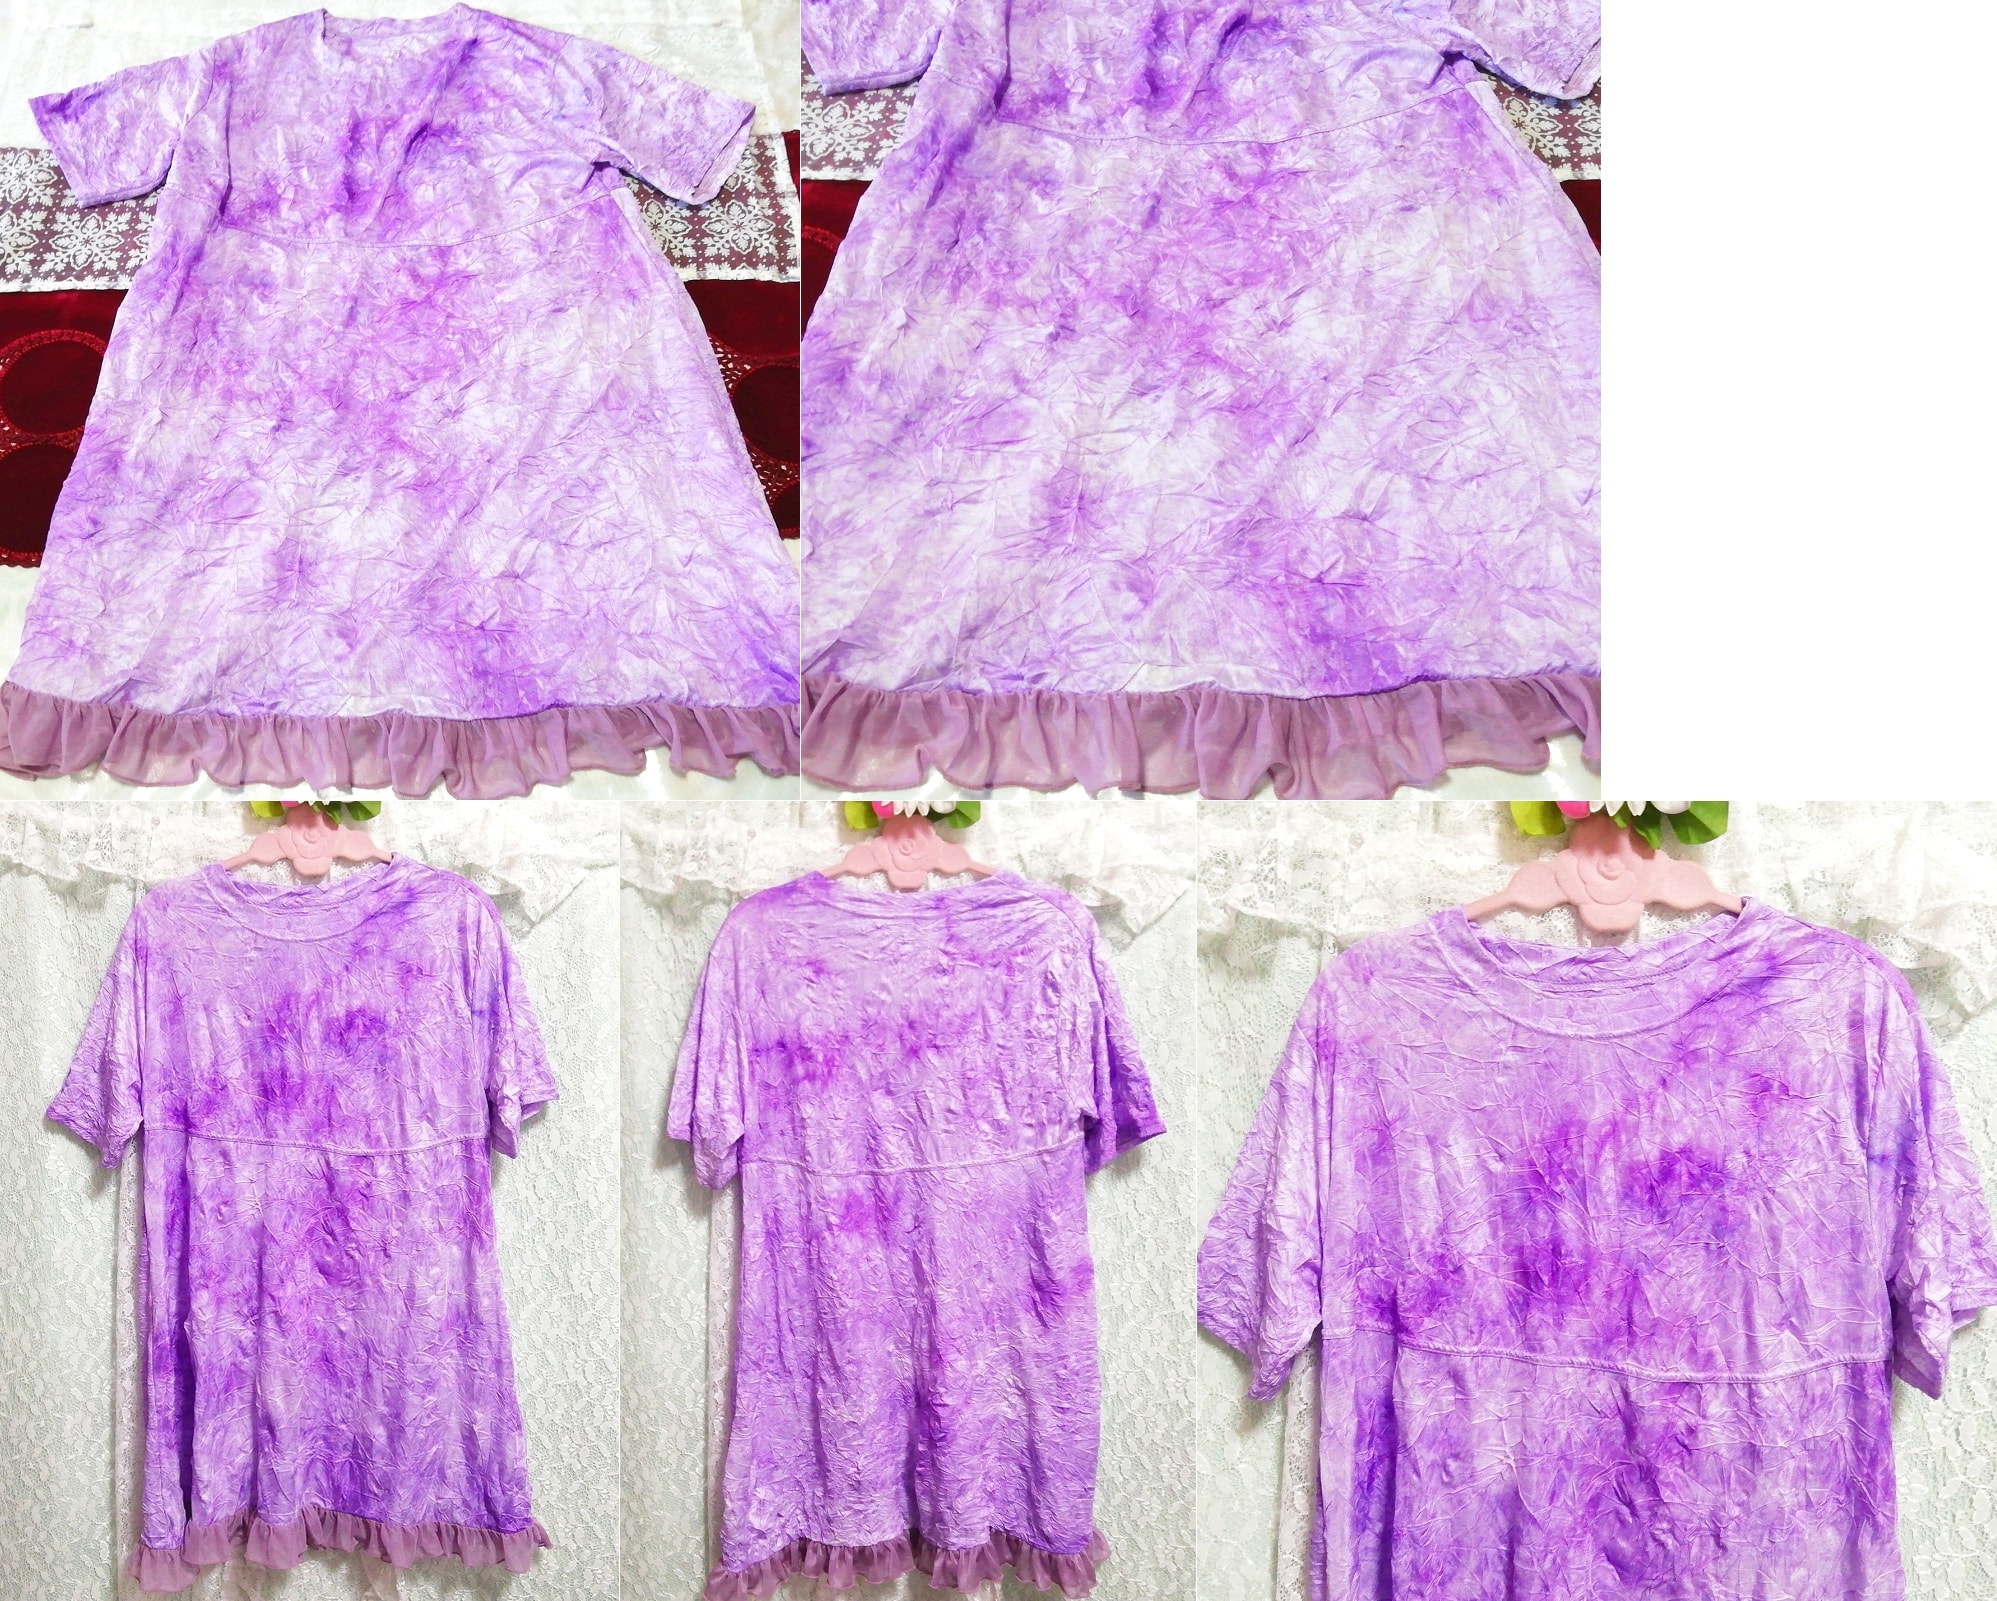 Purple frill art pattern chiffon short sleeve long tunic negligee nightgown dress, tunic, short sleeve, m size